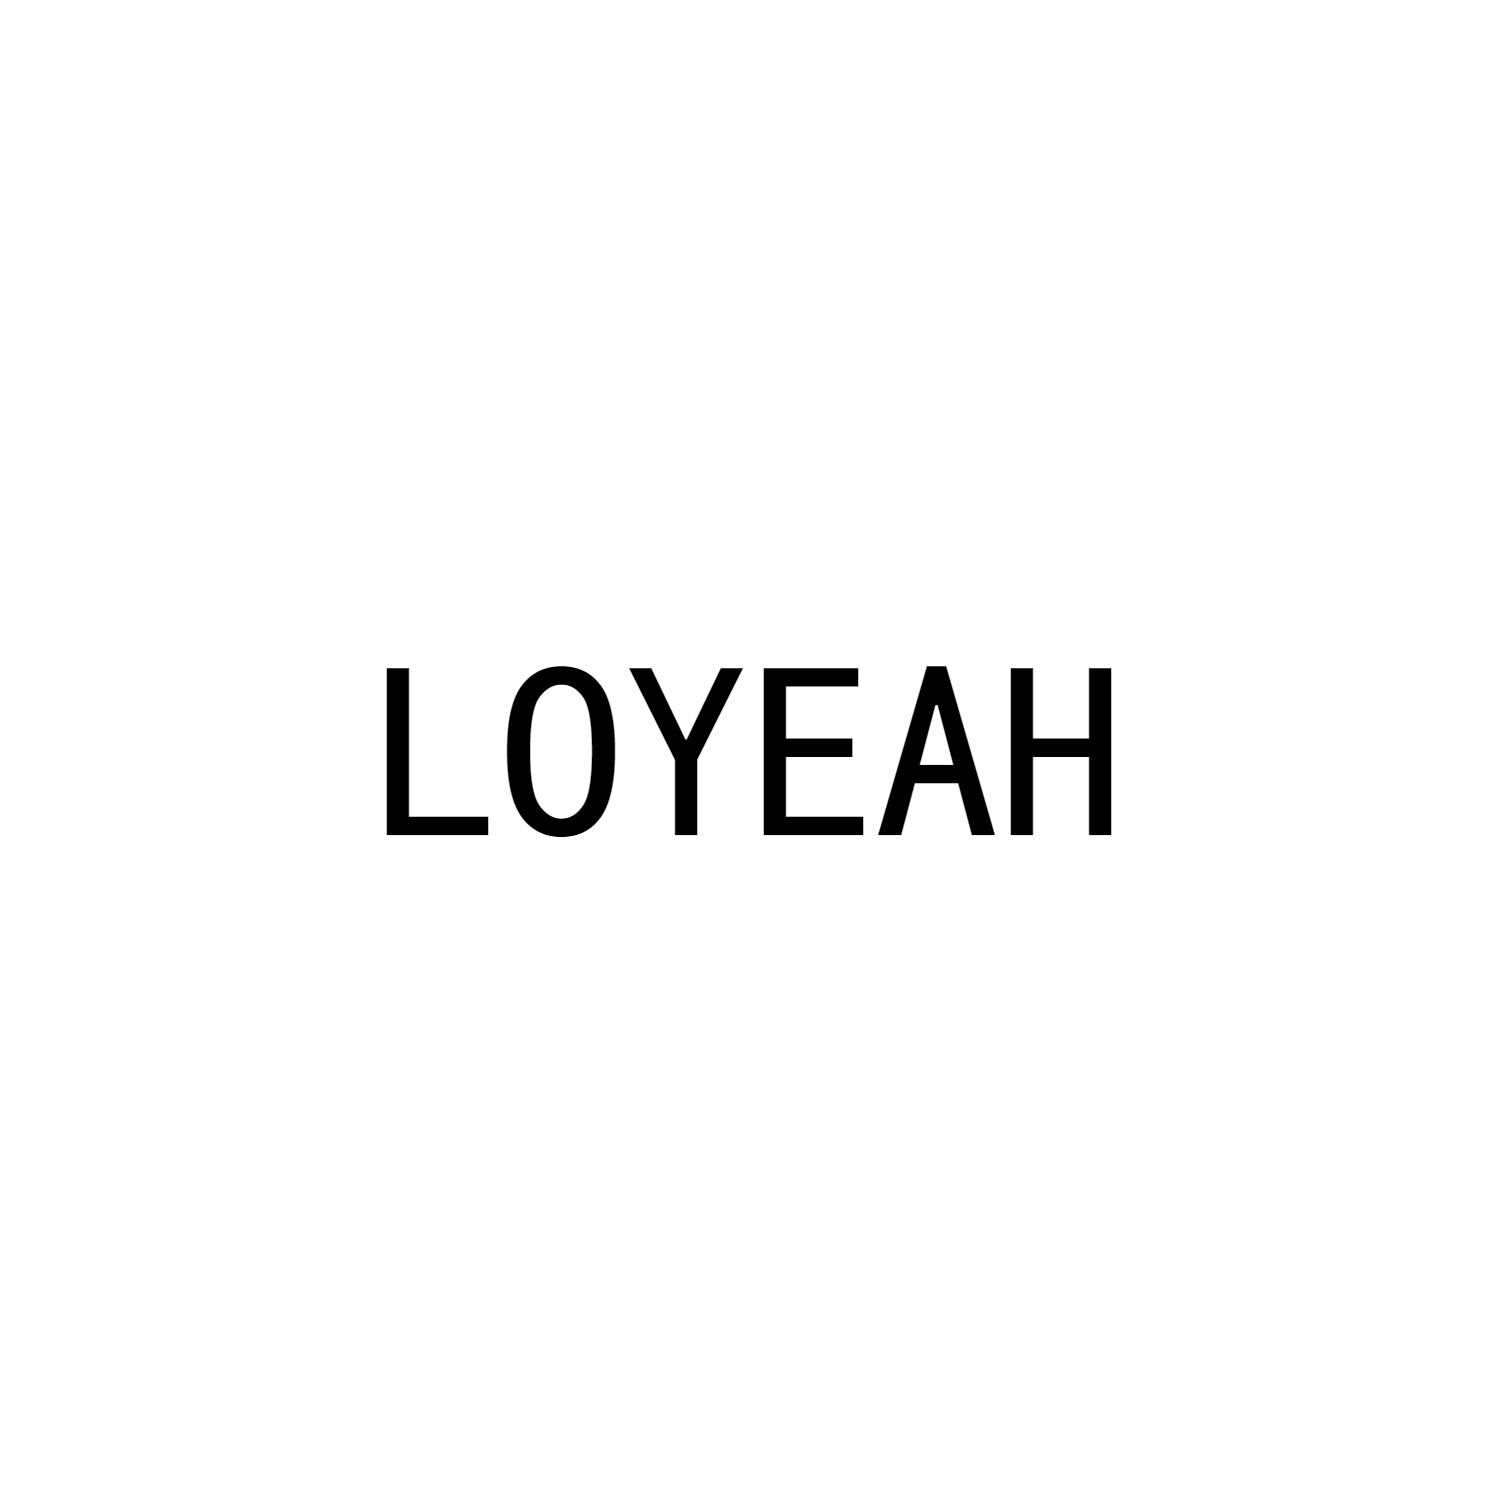 LOYEAH